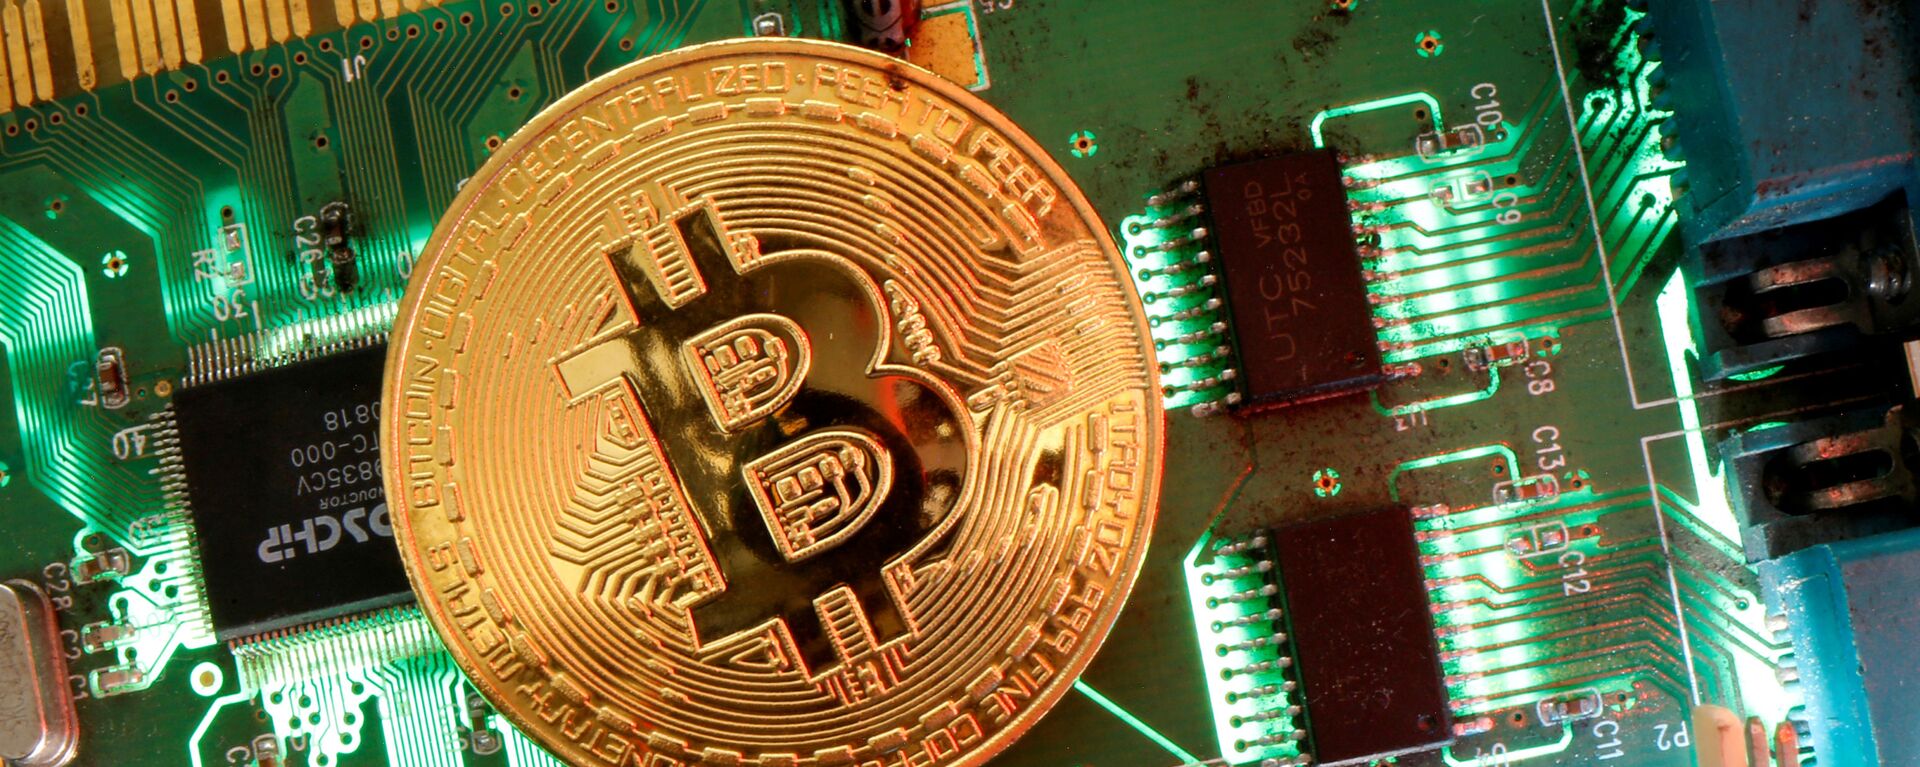 Đại diện của tiền ảo Bitcoin được nhìn thấy trên bo mạch chủ trong hình minh họa này được chụp vào ngày 24 tháng 4 năm 2020 - Sputnik Việt Nam, 1920, 30.03.2021